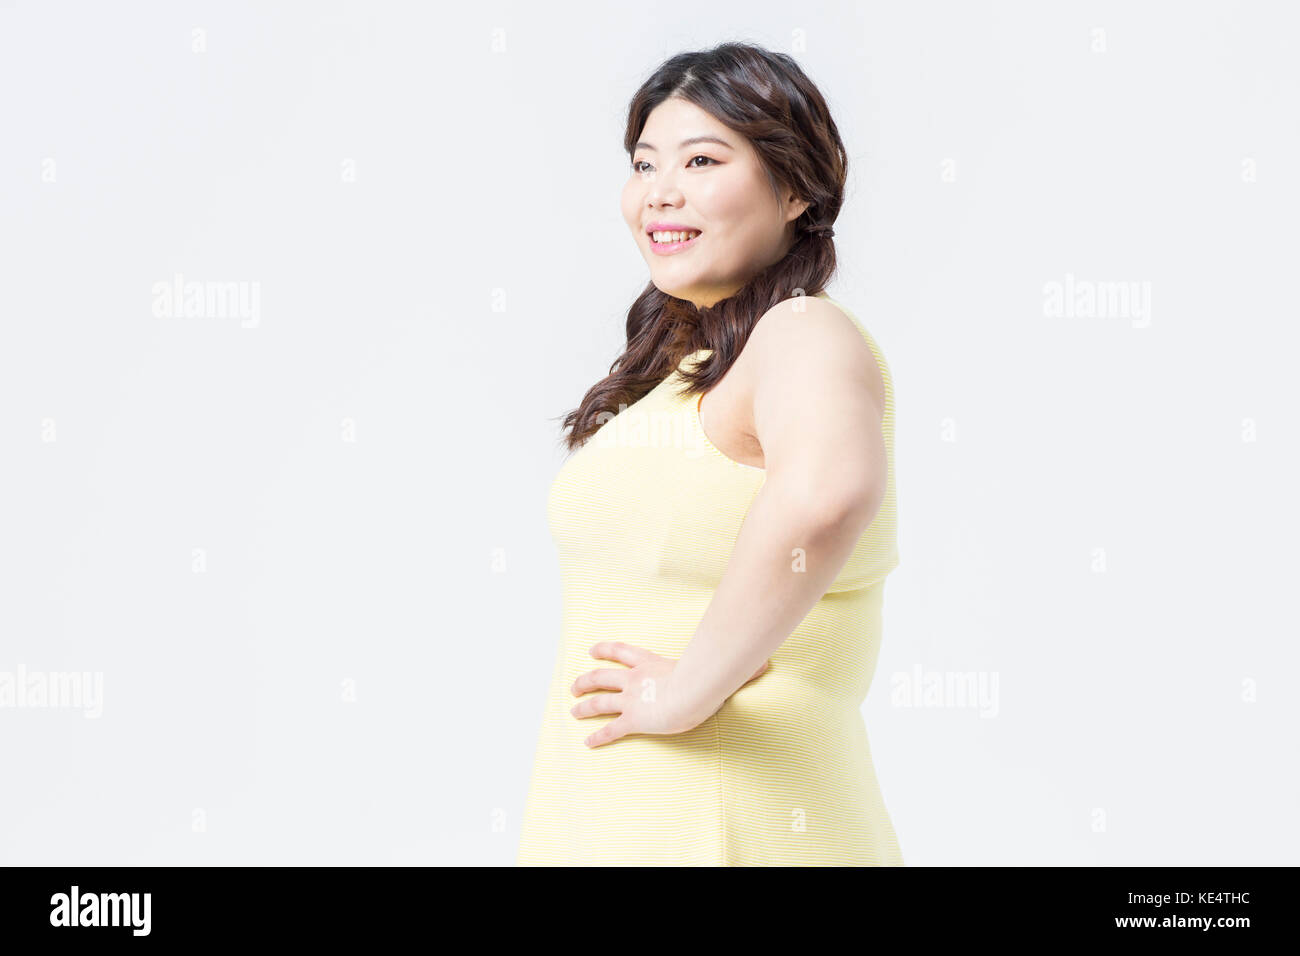 Vista lateral de la grasa en la mujer joven sonriente vestido amarillo posando Foto de stock